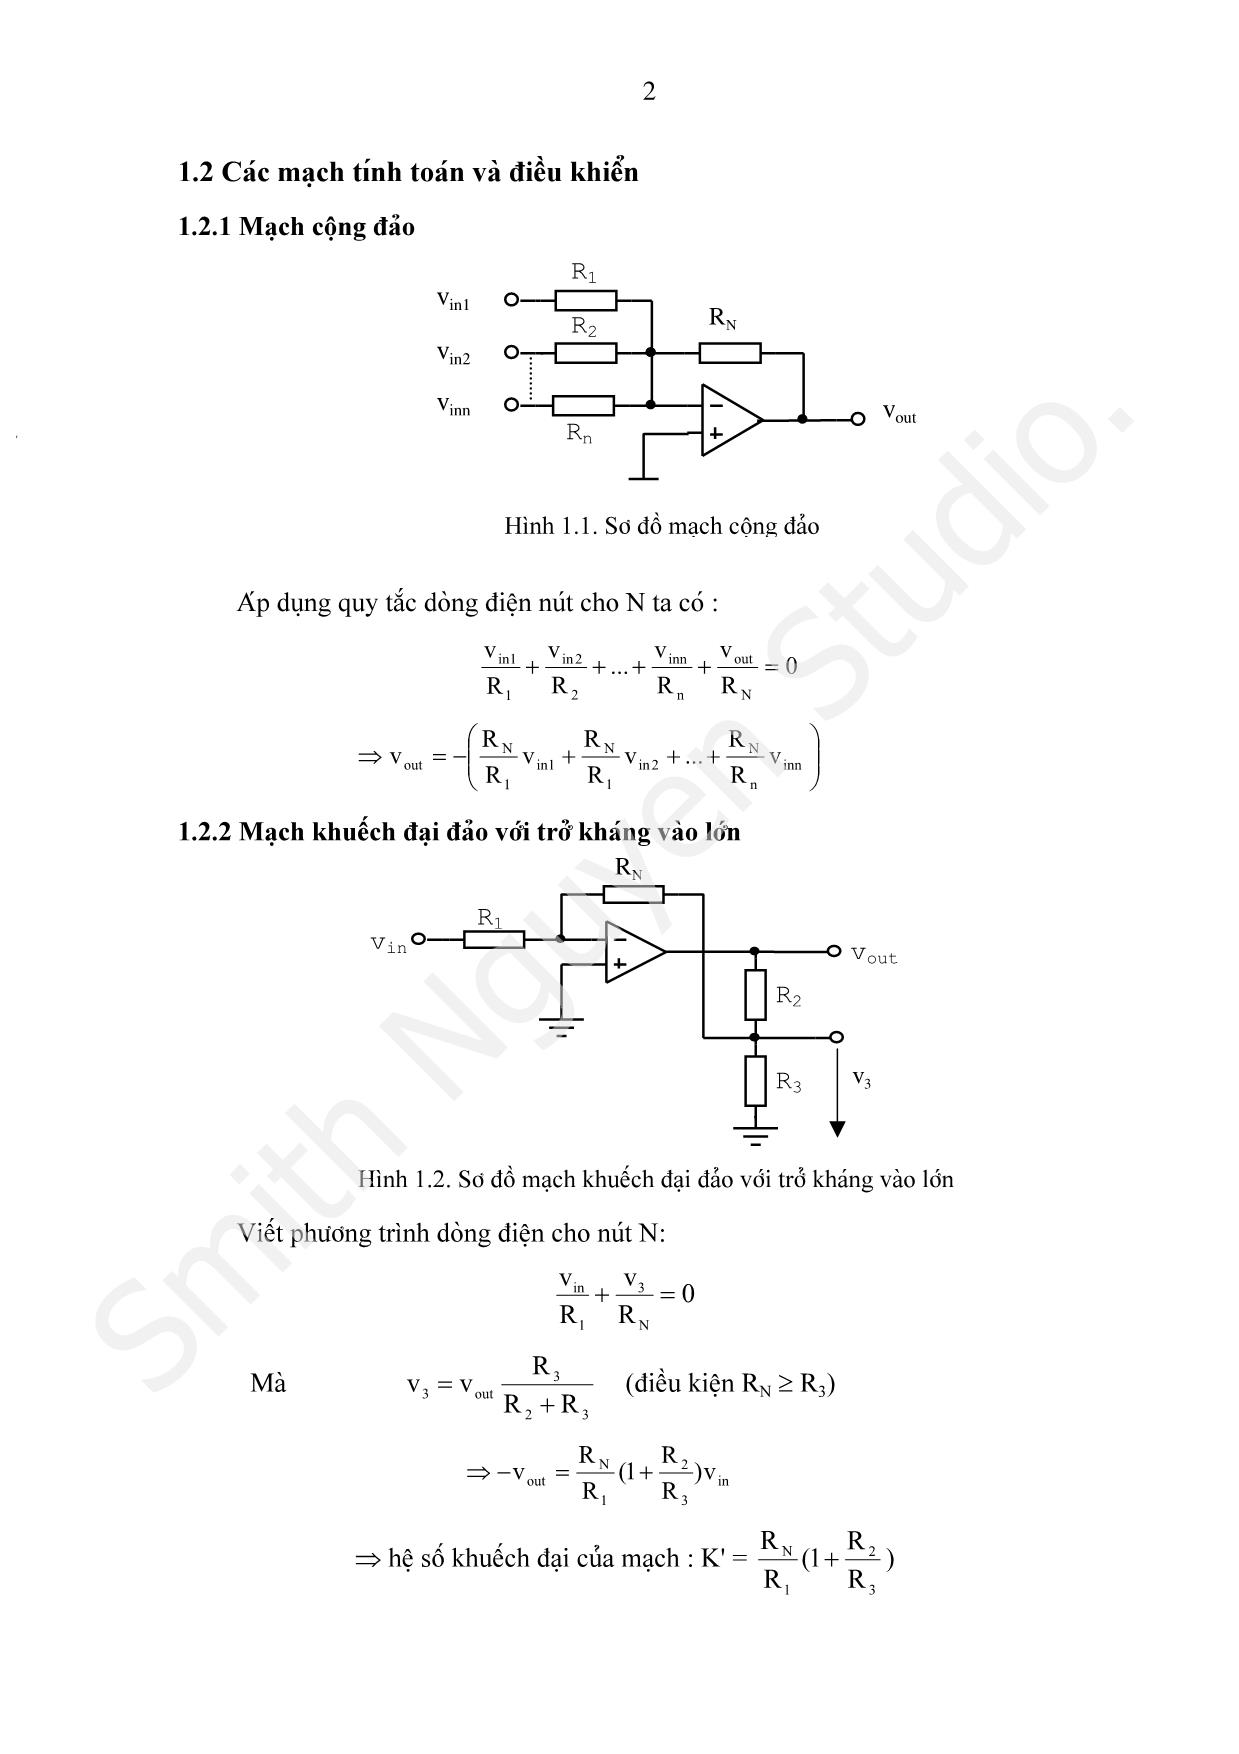 Bài giảng Các mạch tính toán, điều khiển và tạo hàm dùng khuếch đại thuật toán trang 2